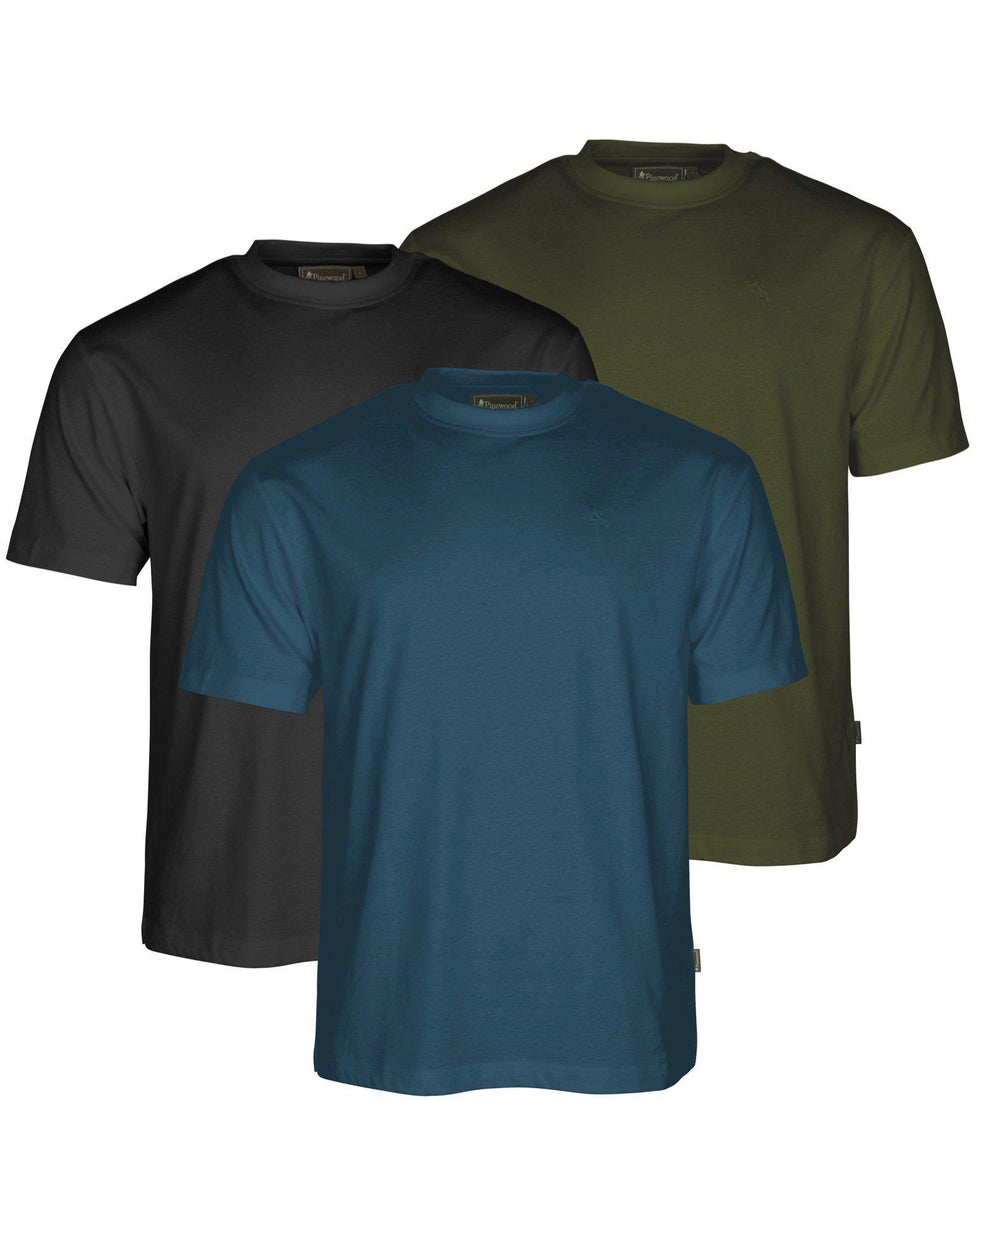 5447-383-01_Pinewood-3-pack-T-shirt-Mens_Black-Azur-Blue-Mossgreen